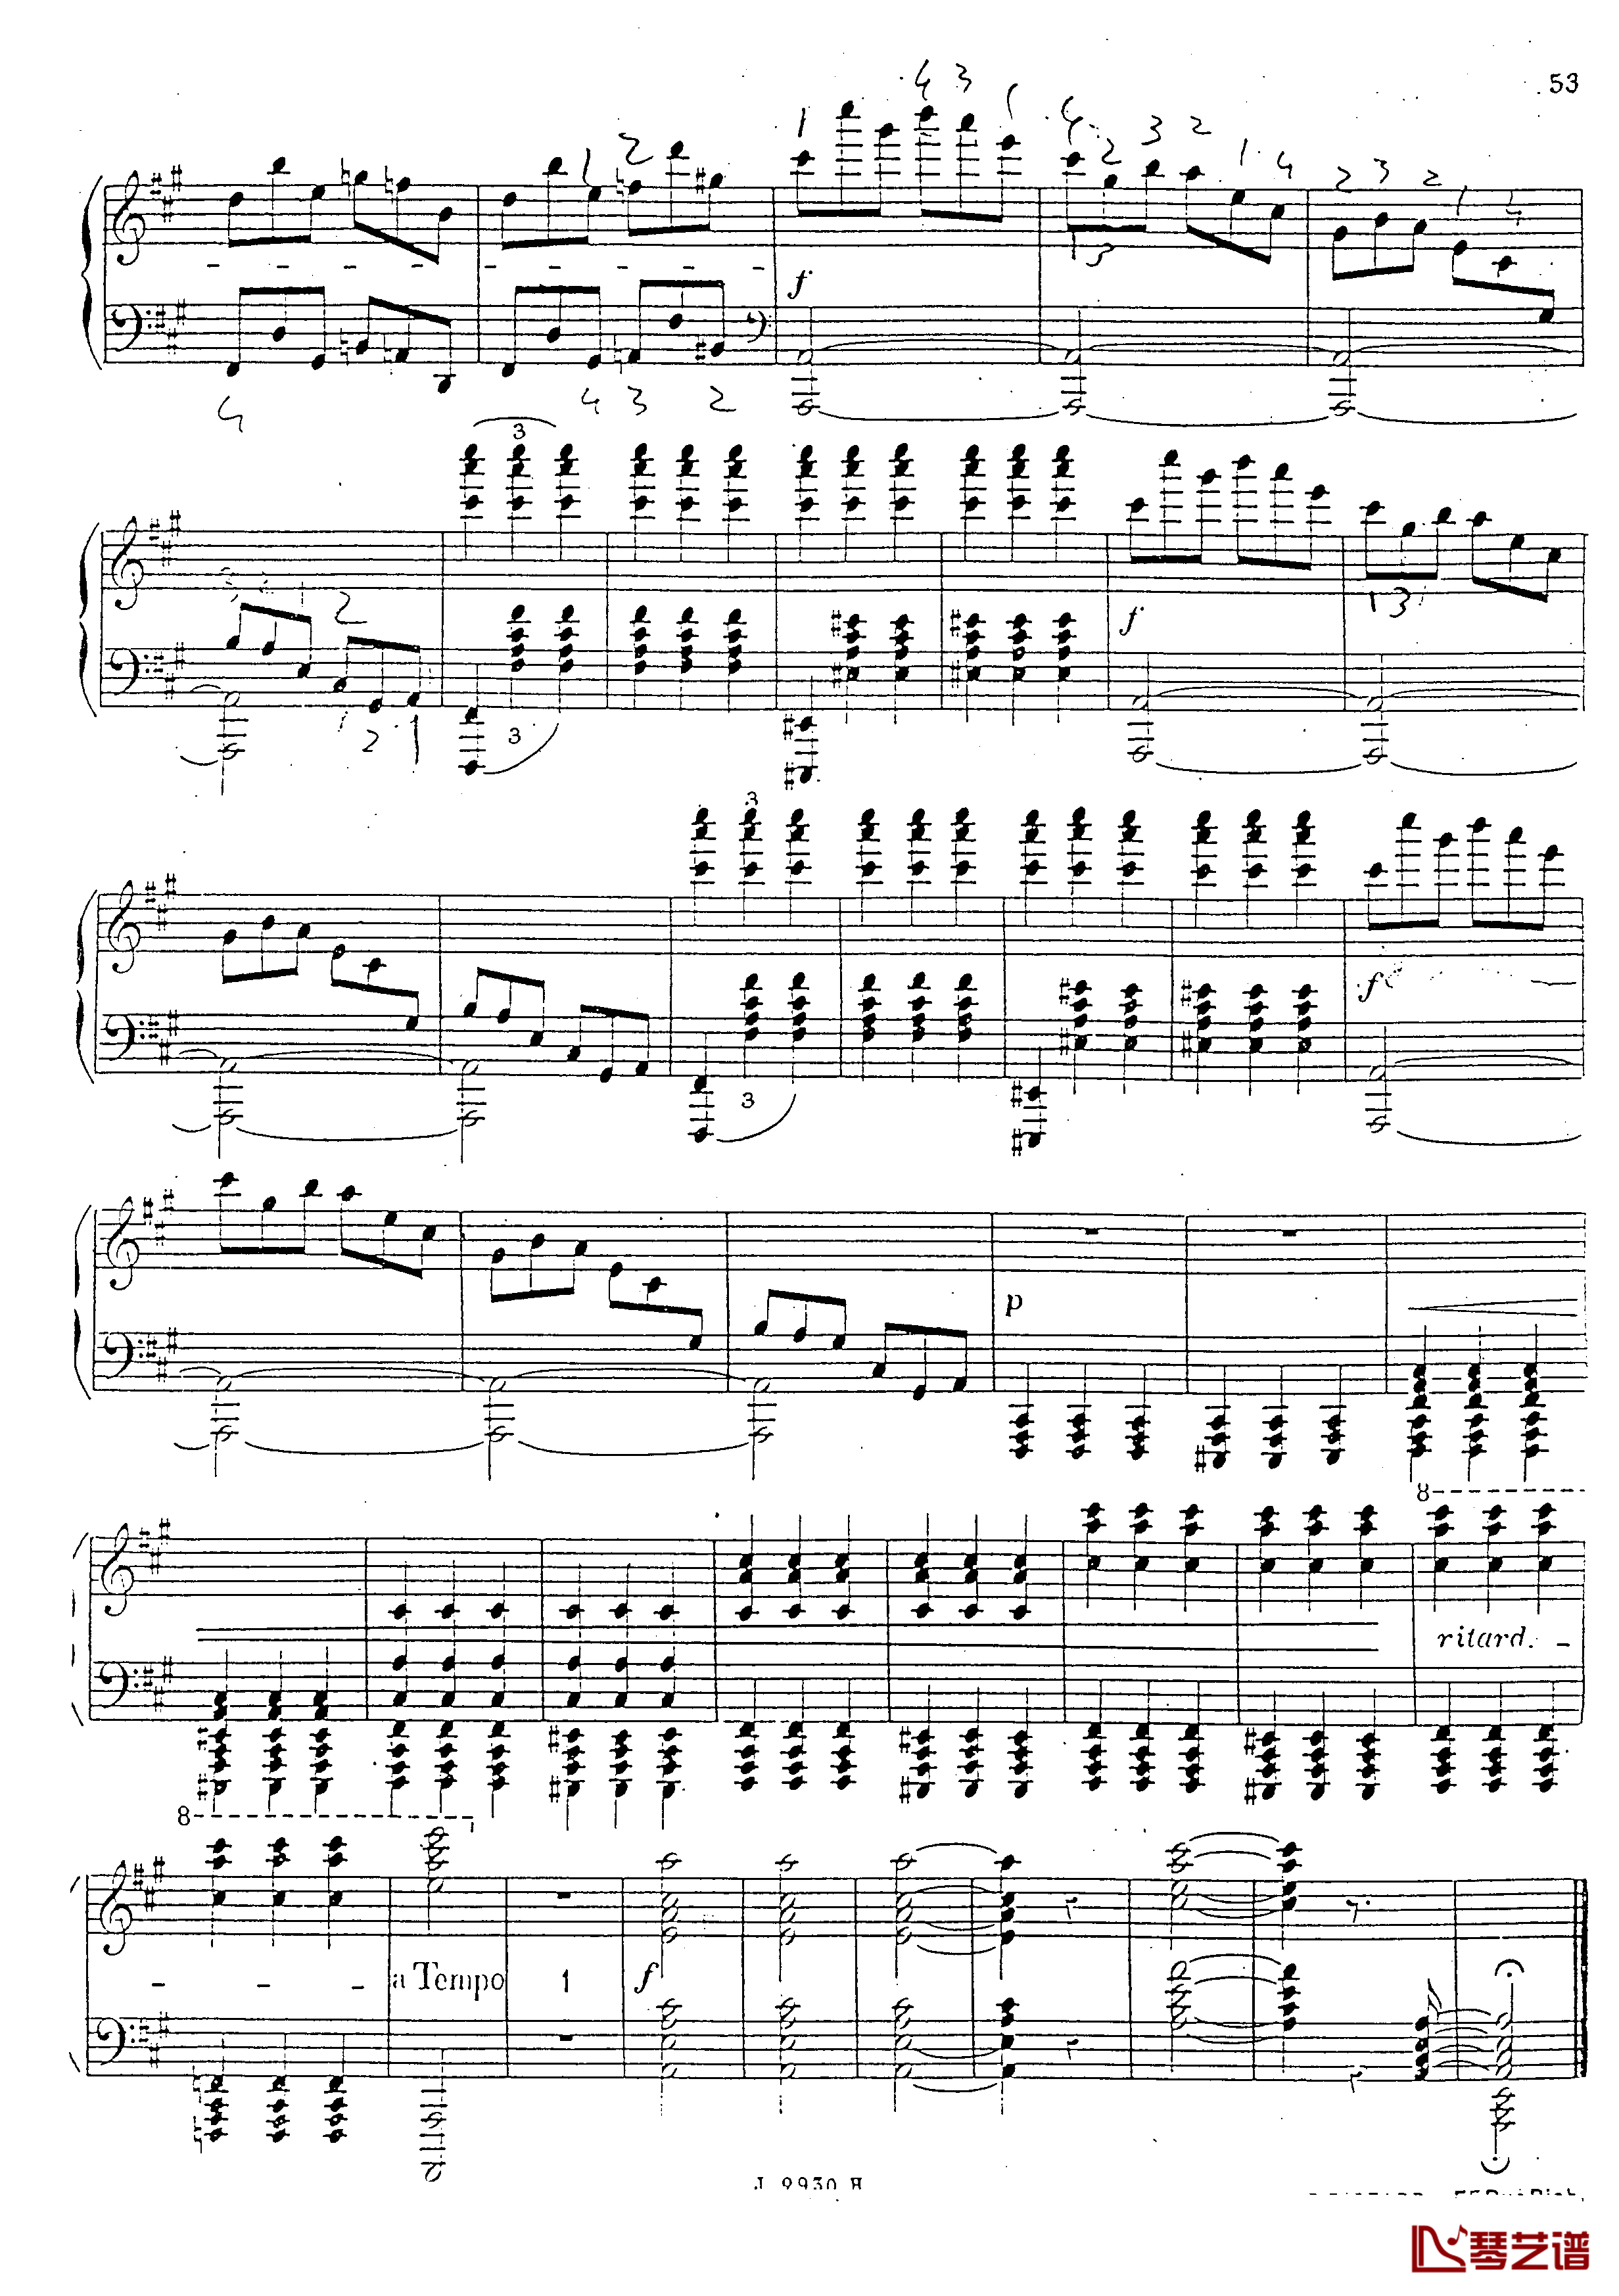 a小调第四钢琴奏鸣曲钢琴谱-安东 鲁宾斯坦- Op.10054